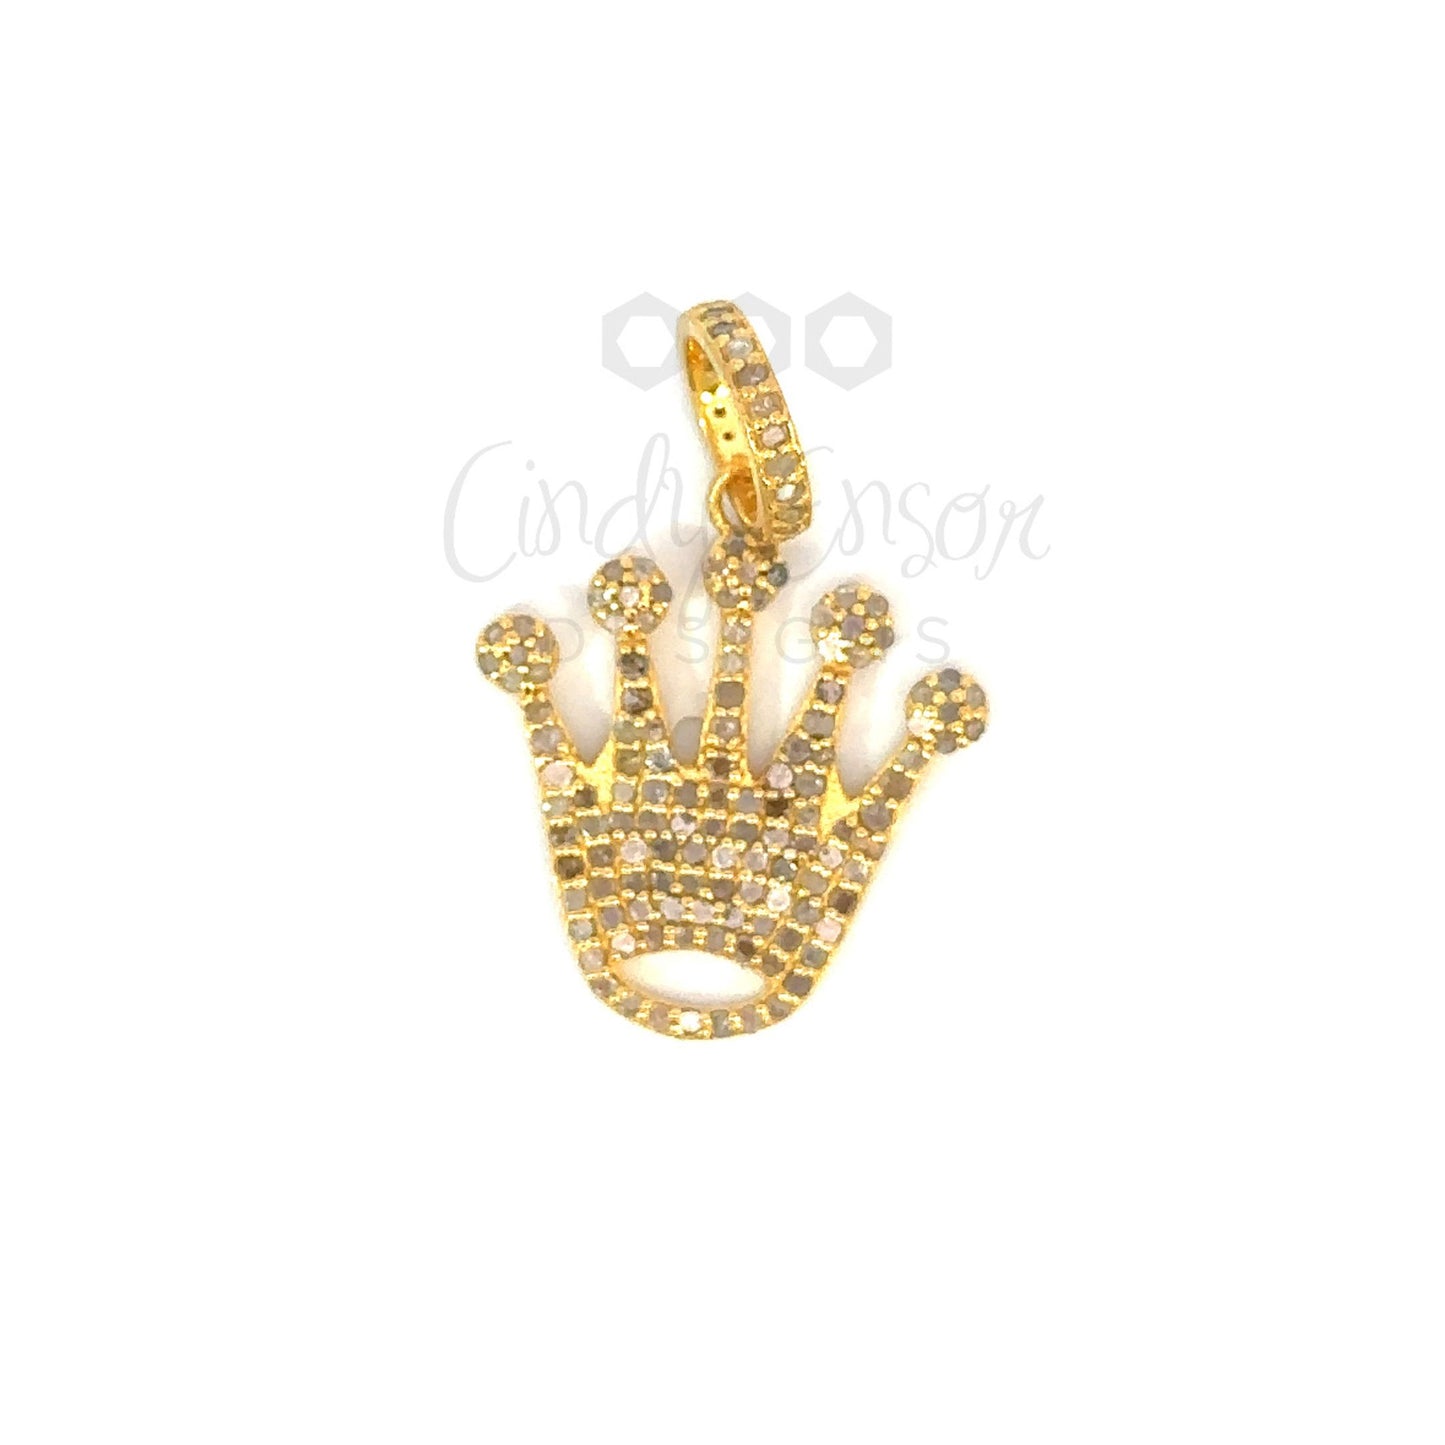 Pave Diamond Crown Pendant